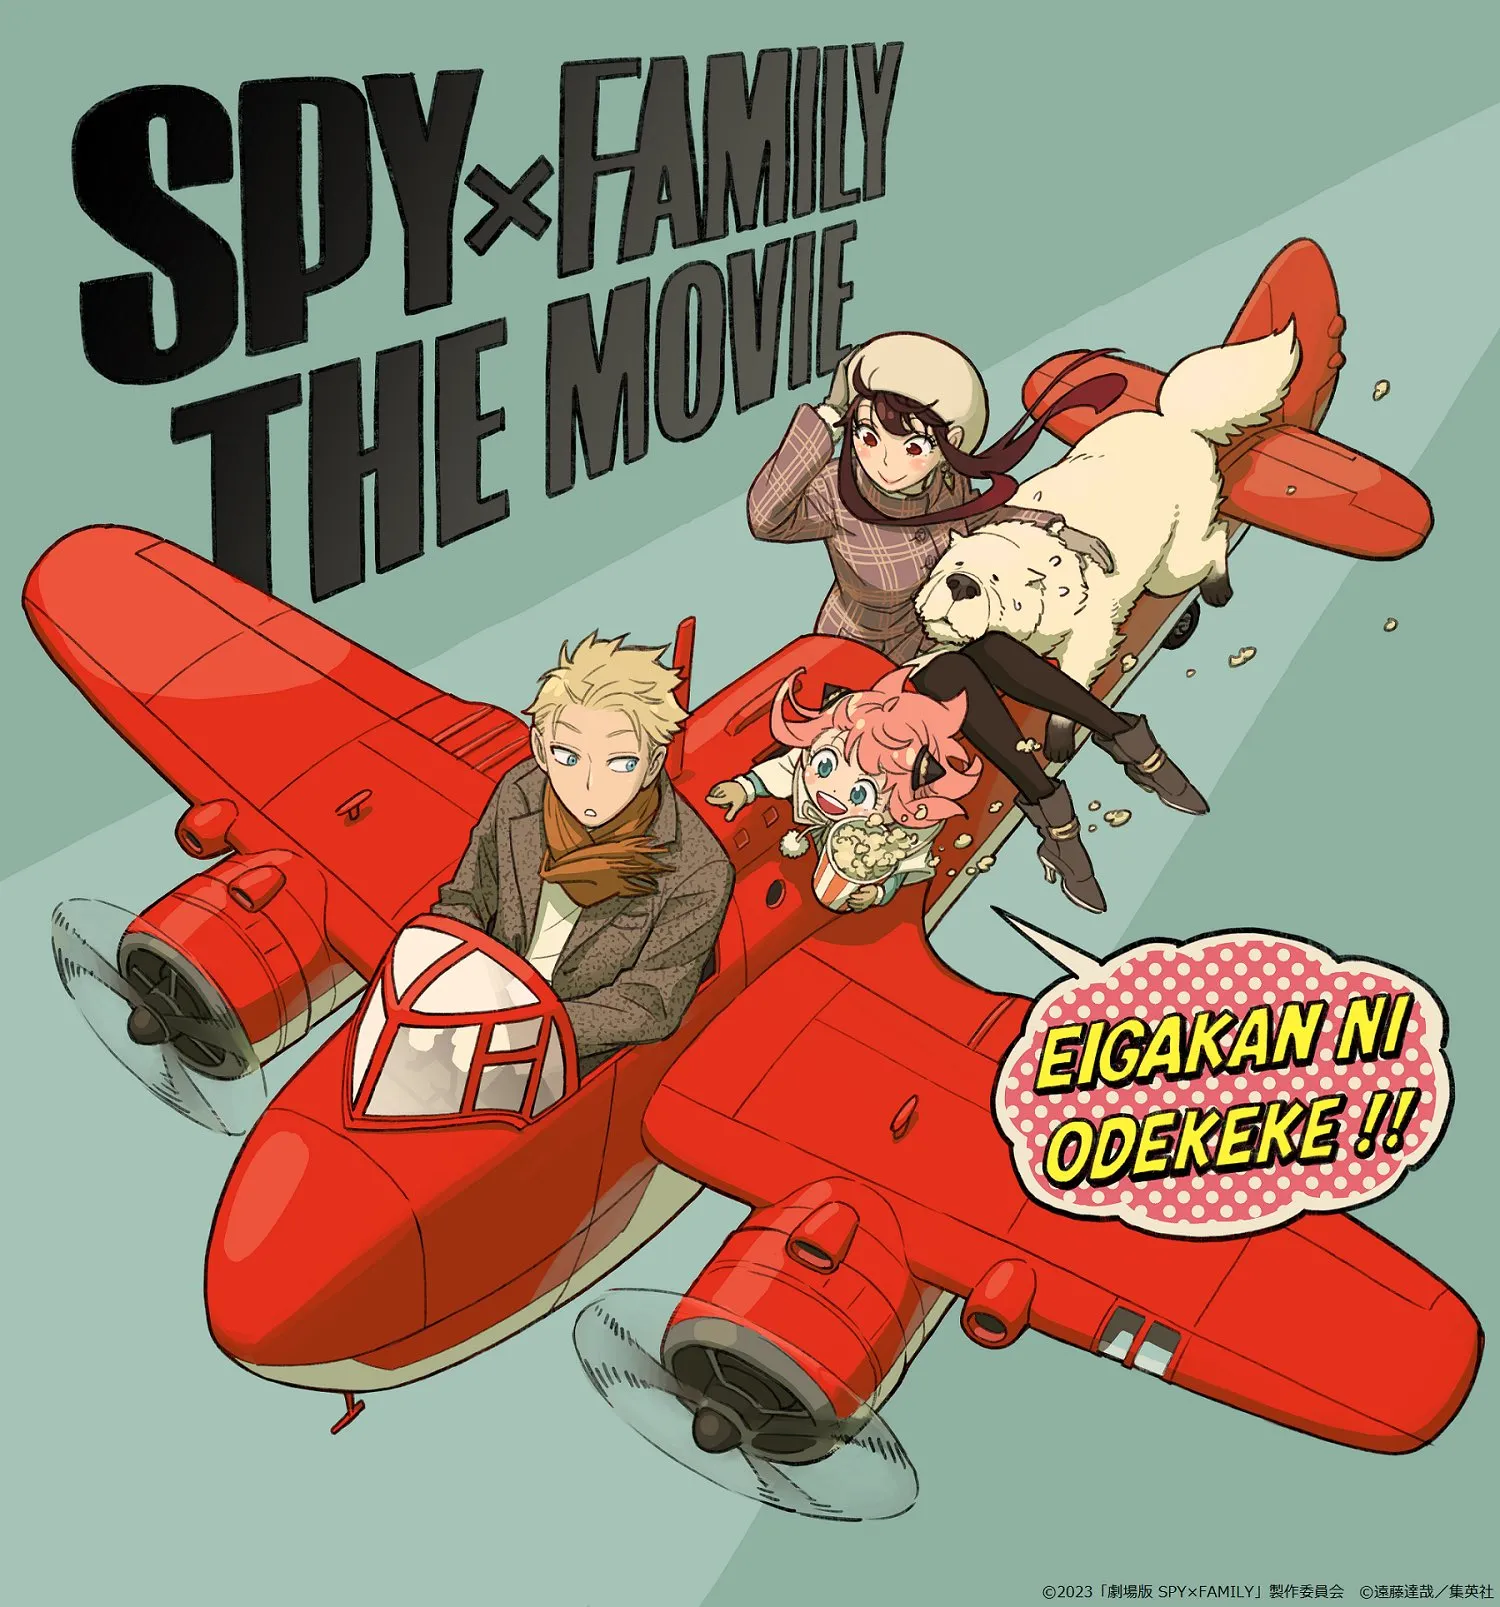 Spy x Family vai ganhar 2ª temporada e filme em 2023